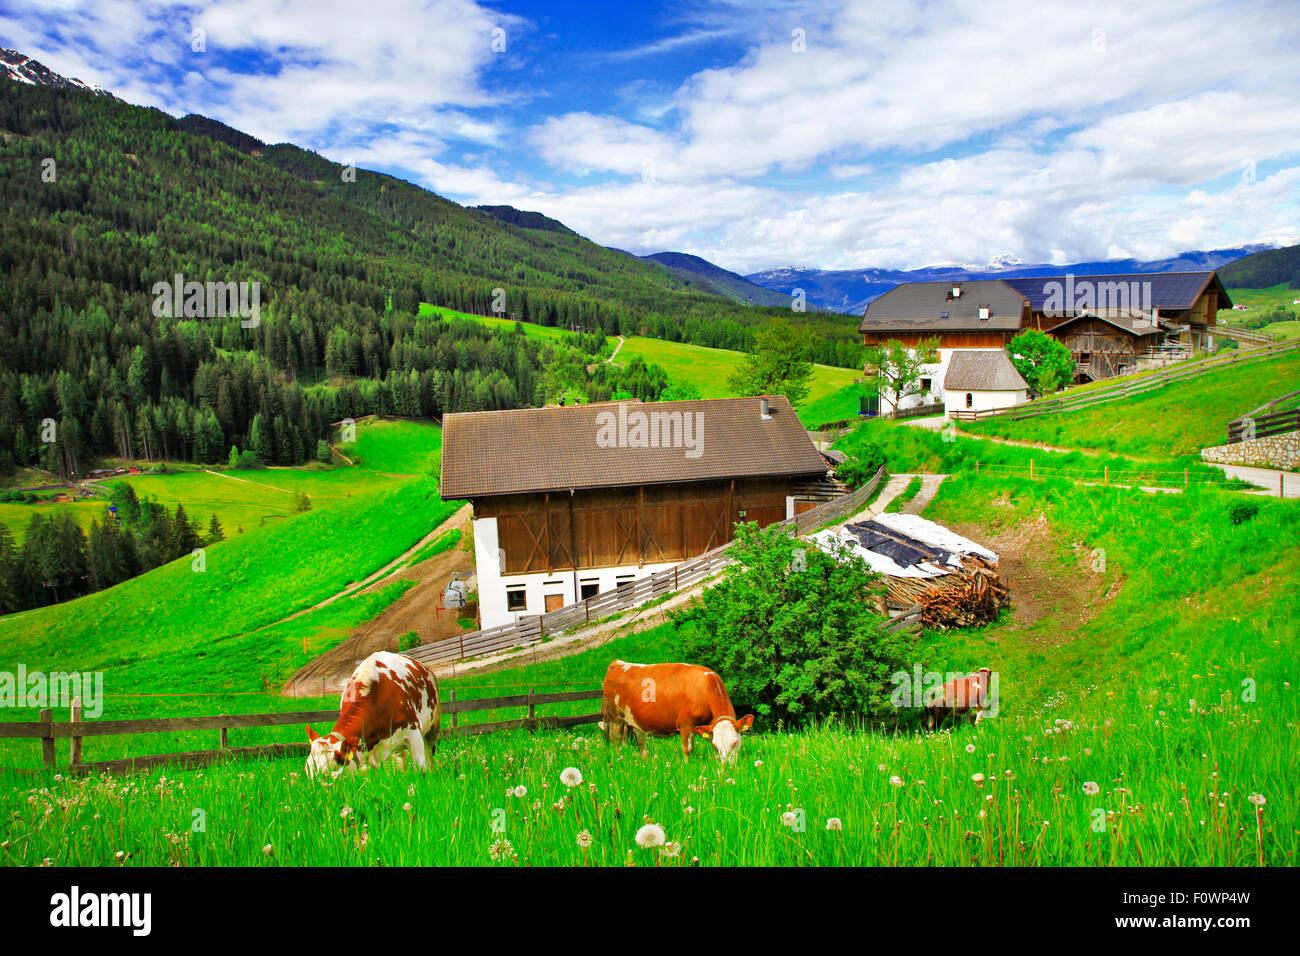 Impressionnant paysage des Dolomites, Val di Funes, Italie Banque D'Images